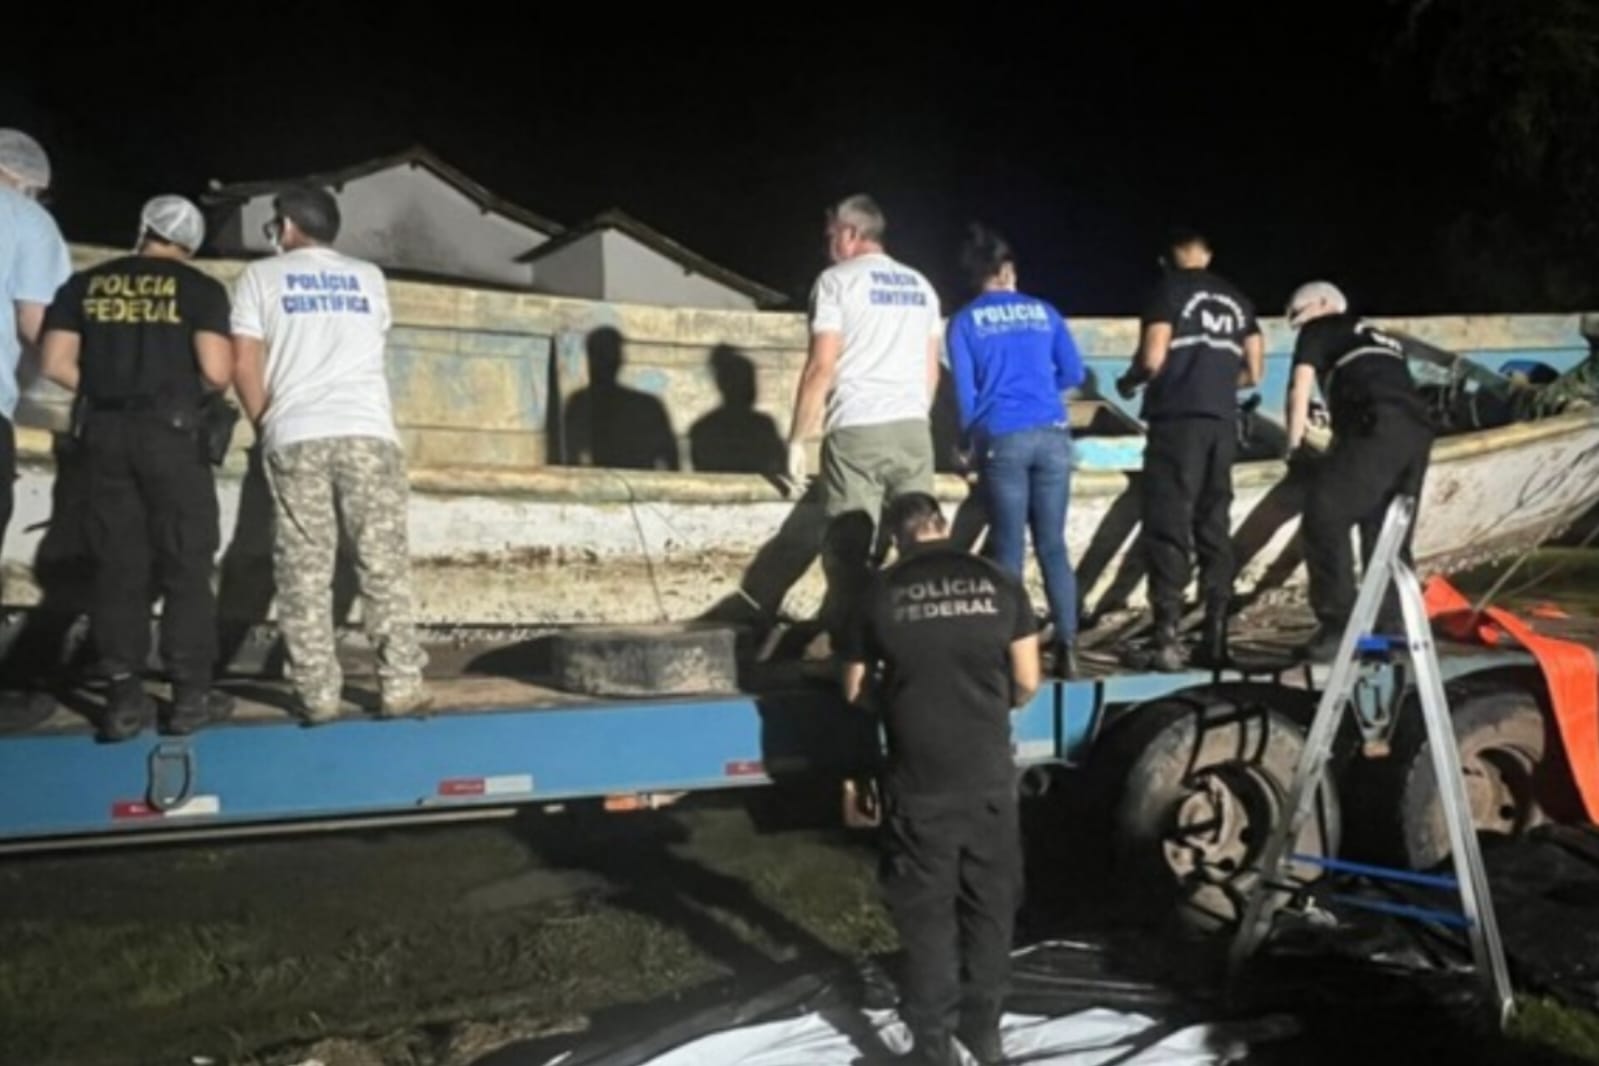 Corpos encontrados em embarcação no Pará são de imigrantes africanos